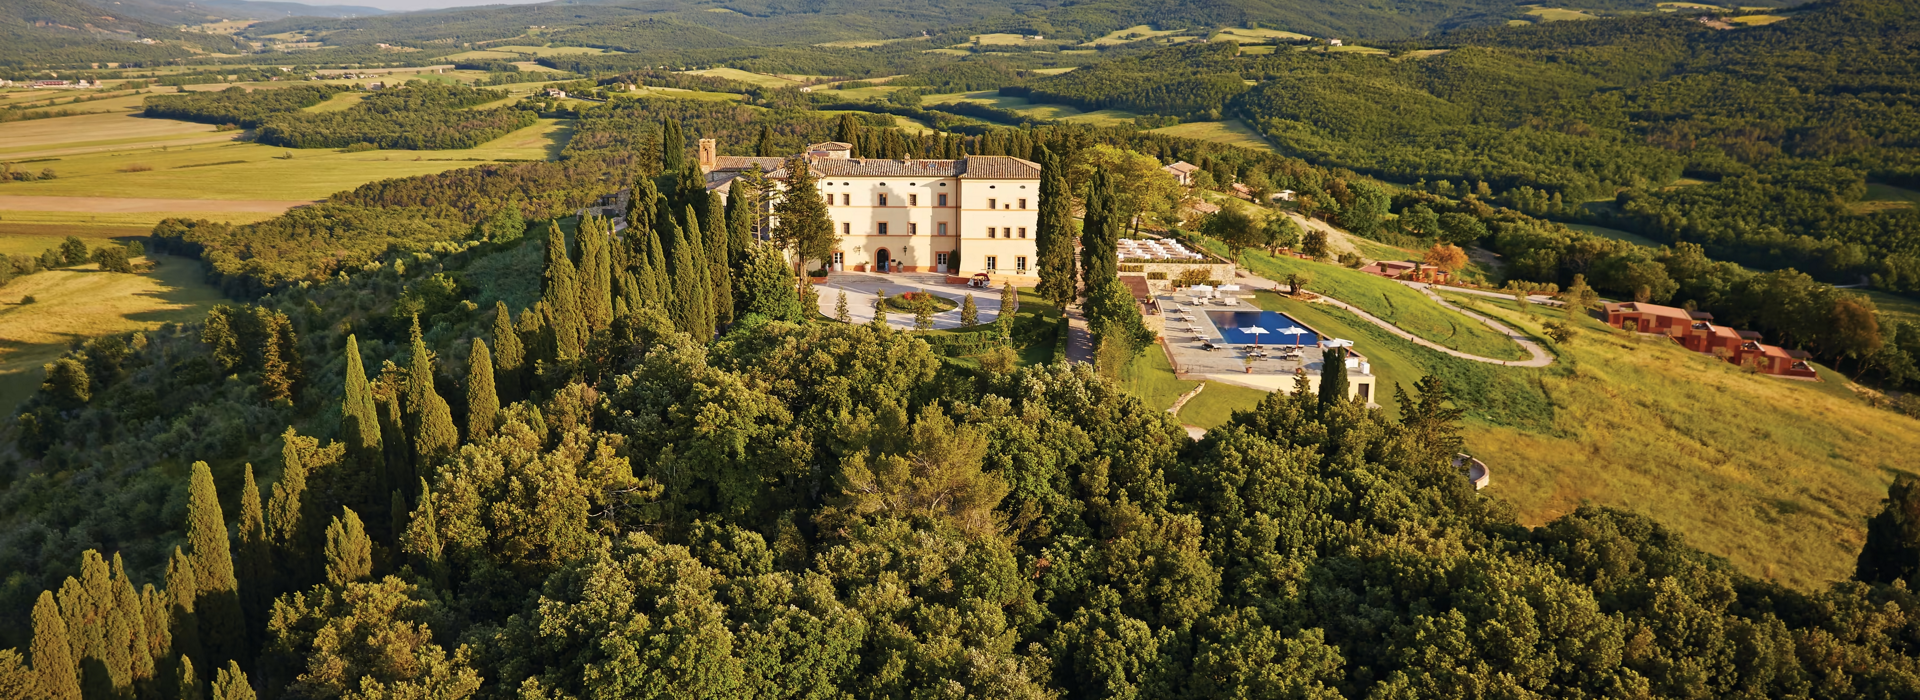 Castello Di Casole, A Belmond Hotel 16.png